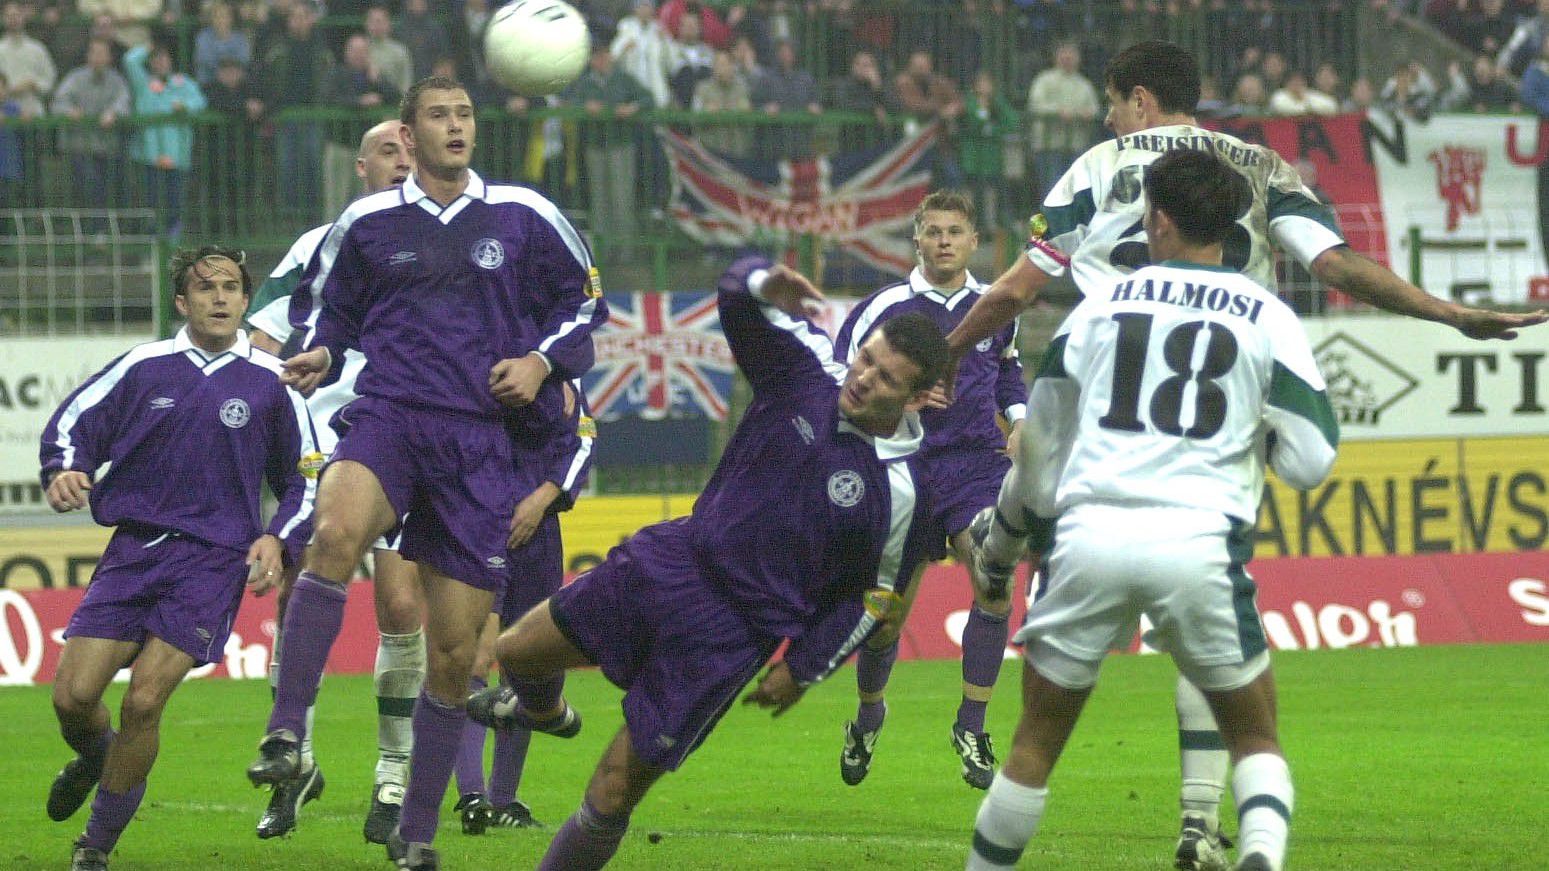 A Haladás játékosaként Preisinger Sándor az Újpest ellen is eredményes volt 2001 októberében, a szombathelyiek 2–2-es döntetlent értek el hazai pályán. (Fotó: Czika László/MTI)